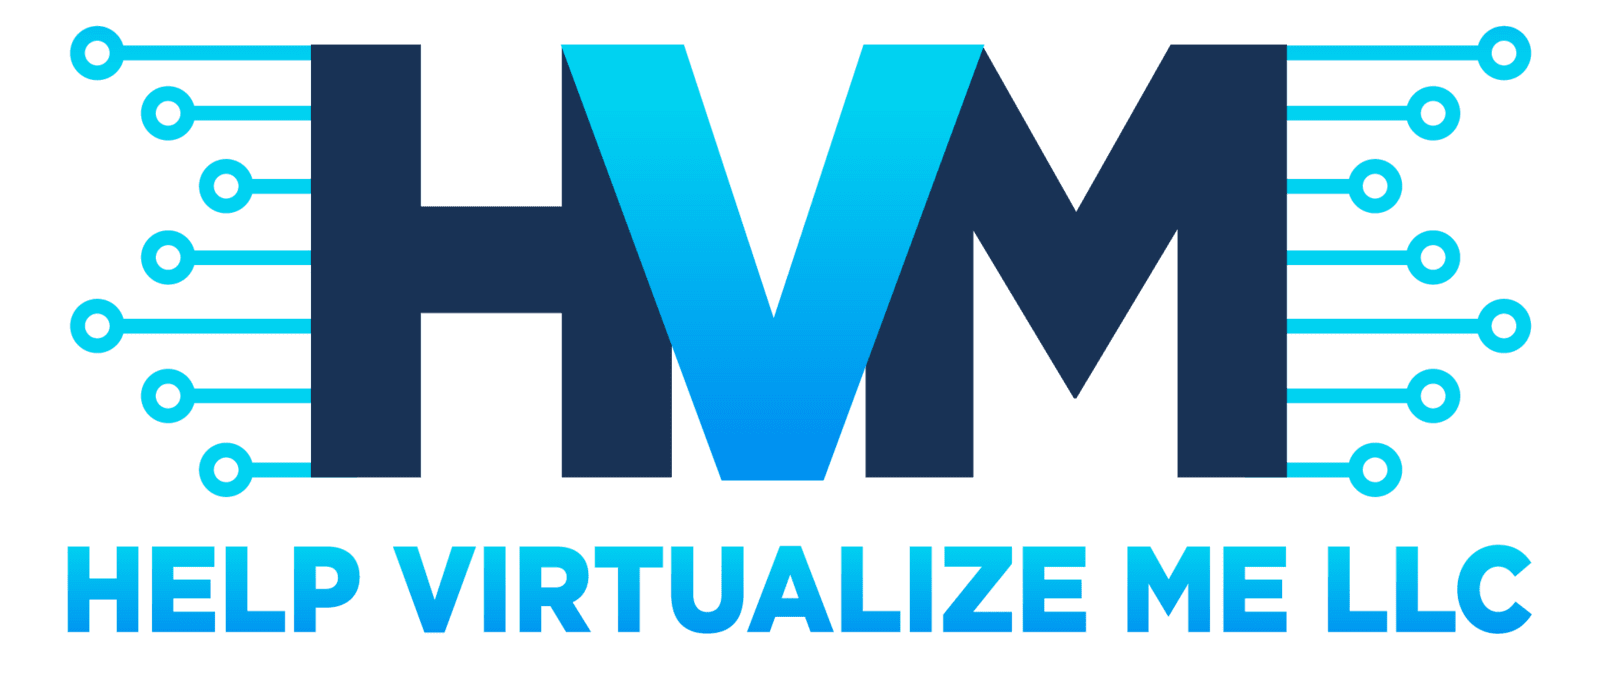 Help Virtualize Me LLC